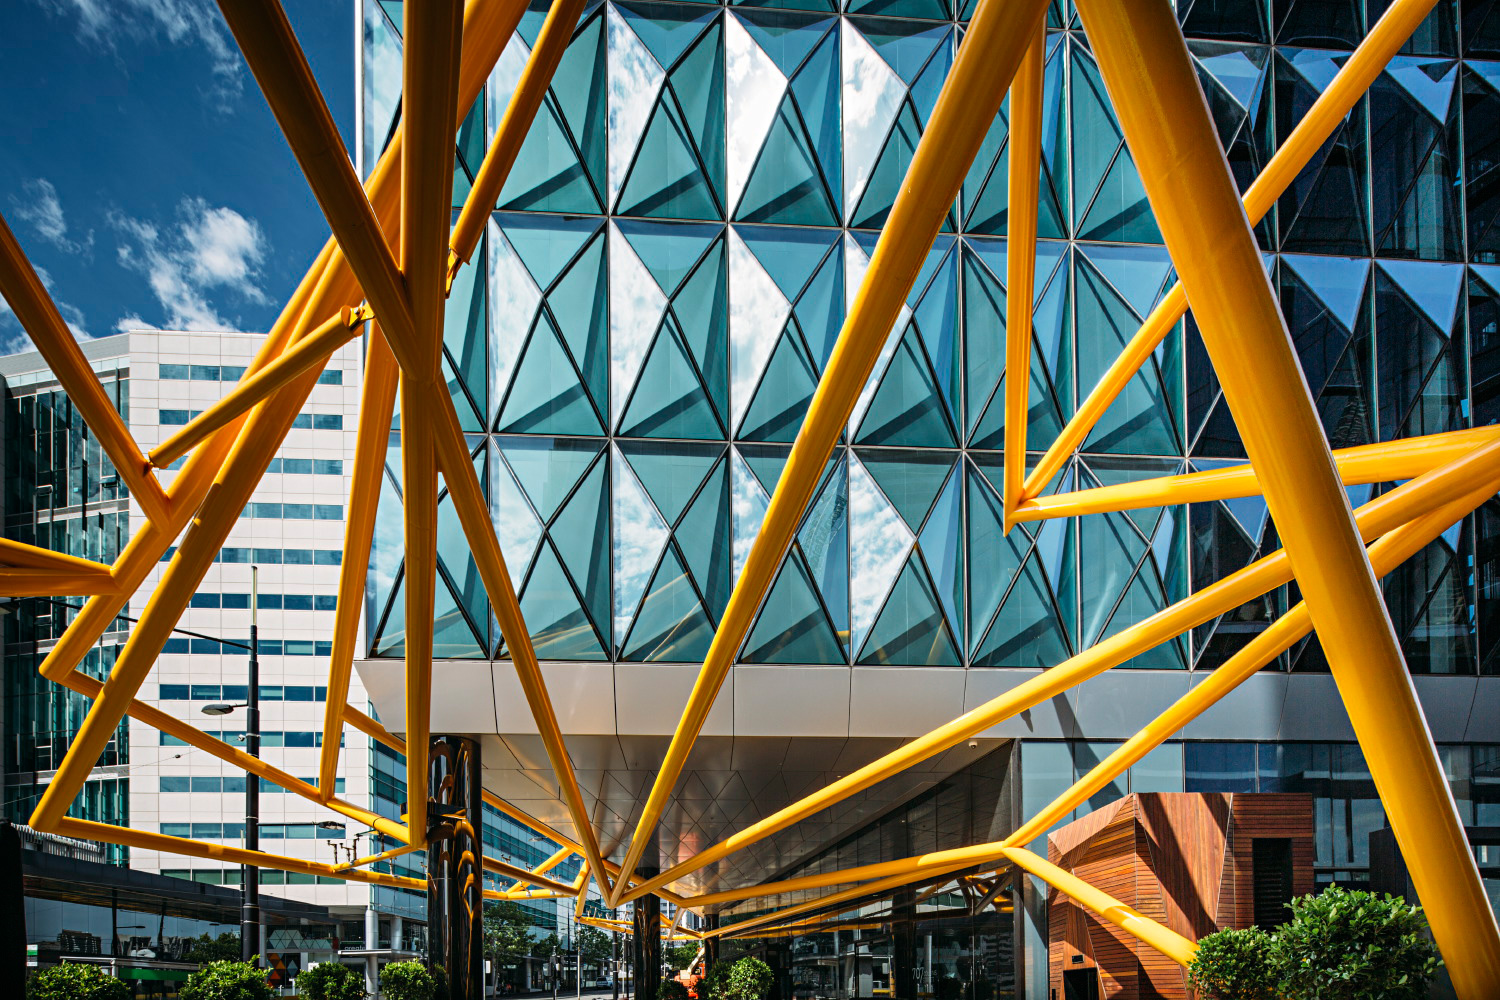 003-Melbourne-Architecture.jpg